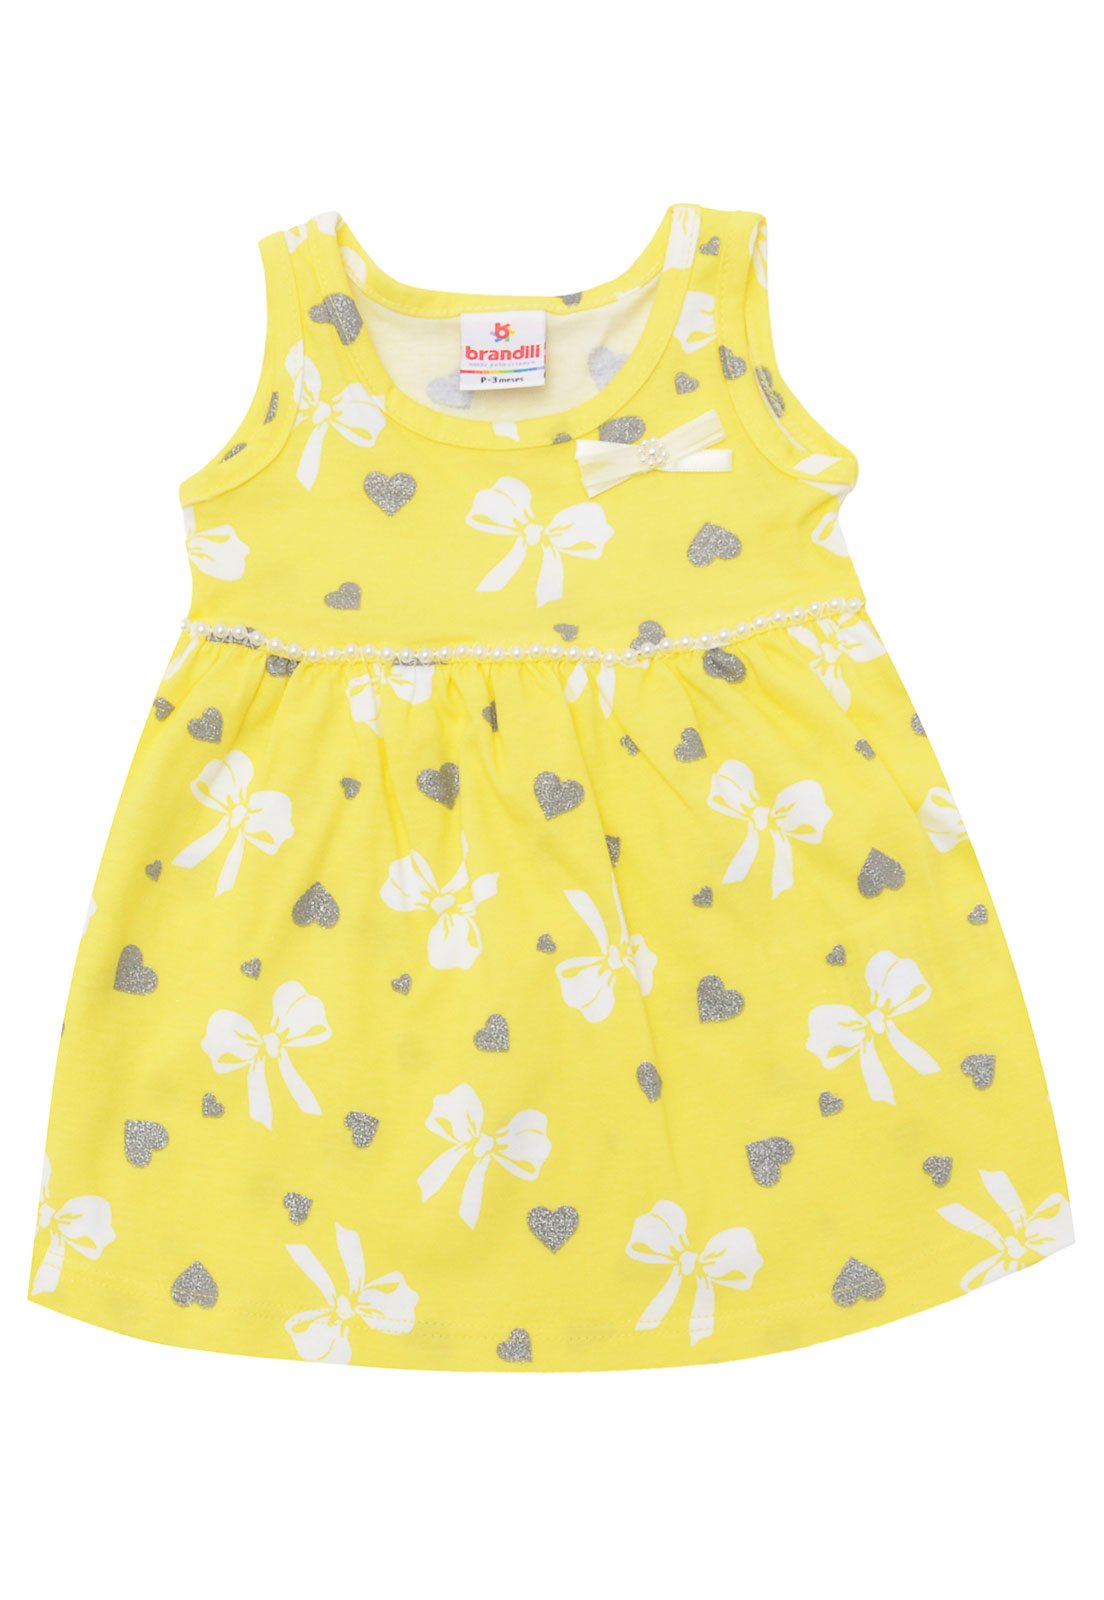 vestido amarelo para bebe